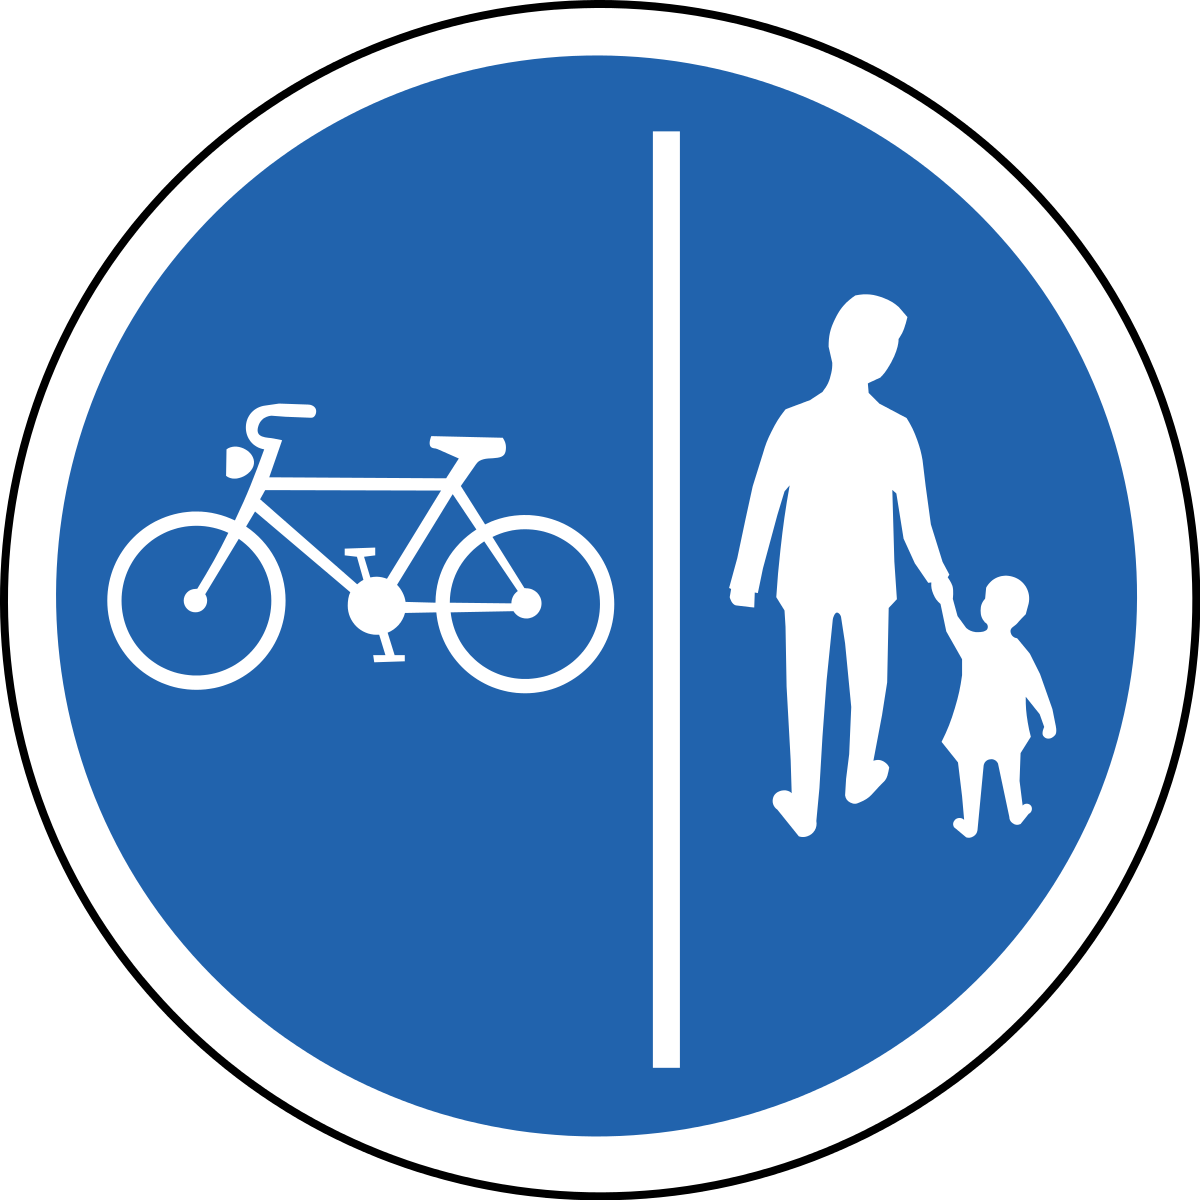 4.4.1 Велосипедная дорожка. Велосипедная дорожка дорожный знак. Зак велосипедноц дорожки. Дорожные знаки для детей велосипедная дорожка.